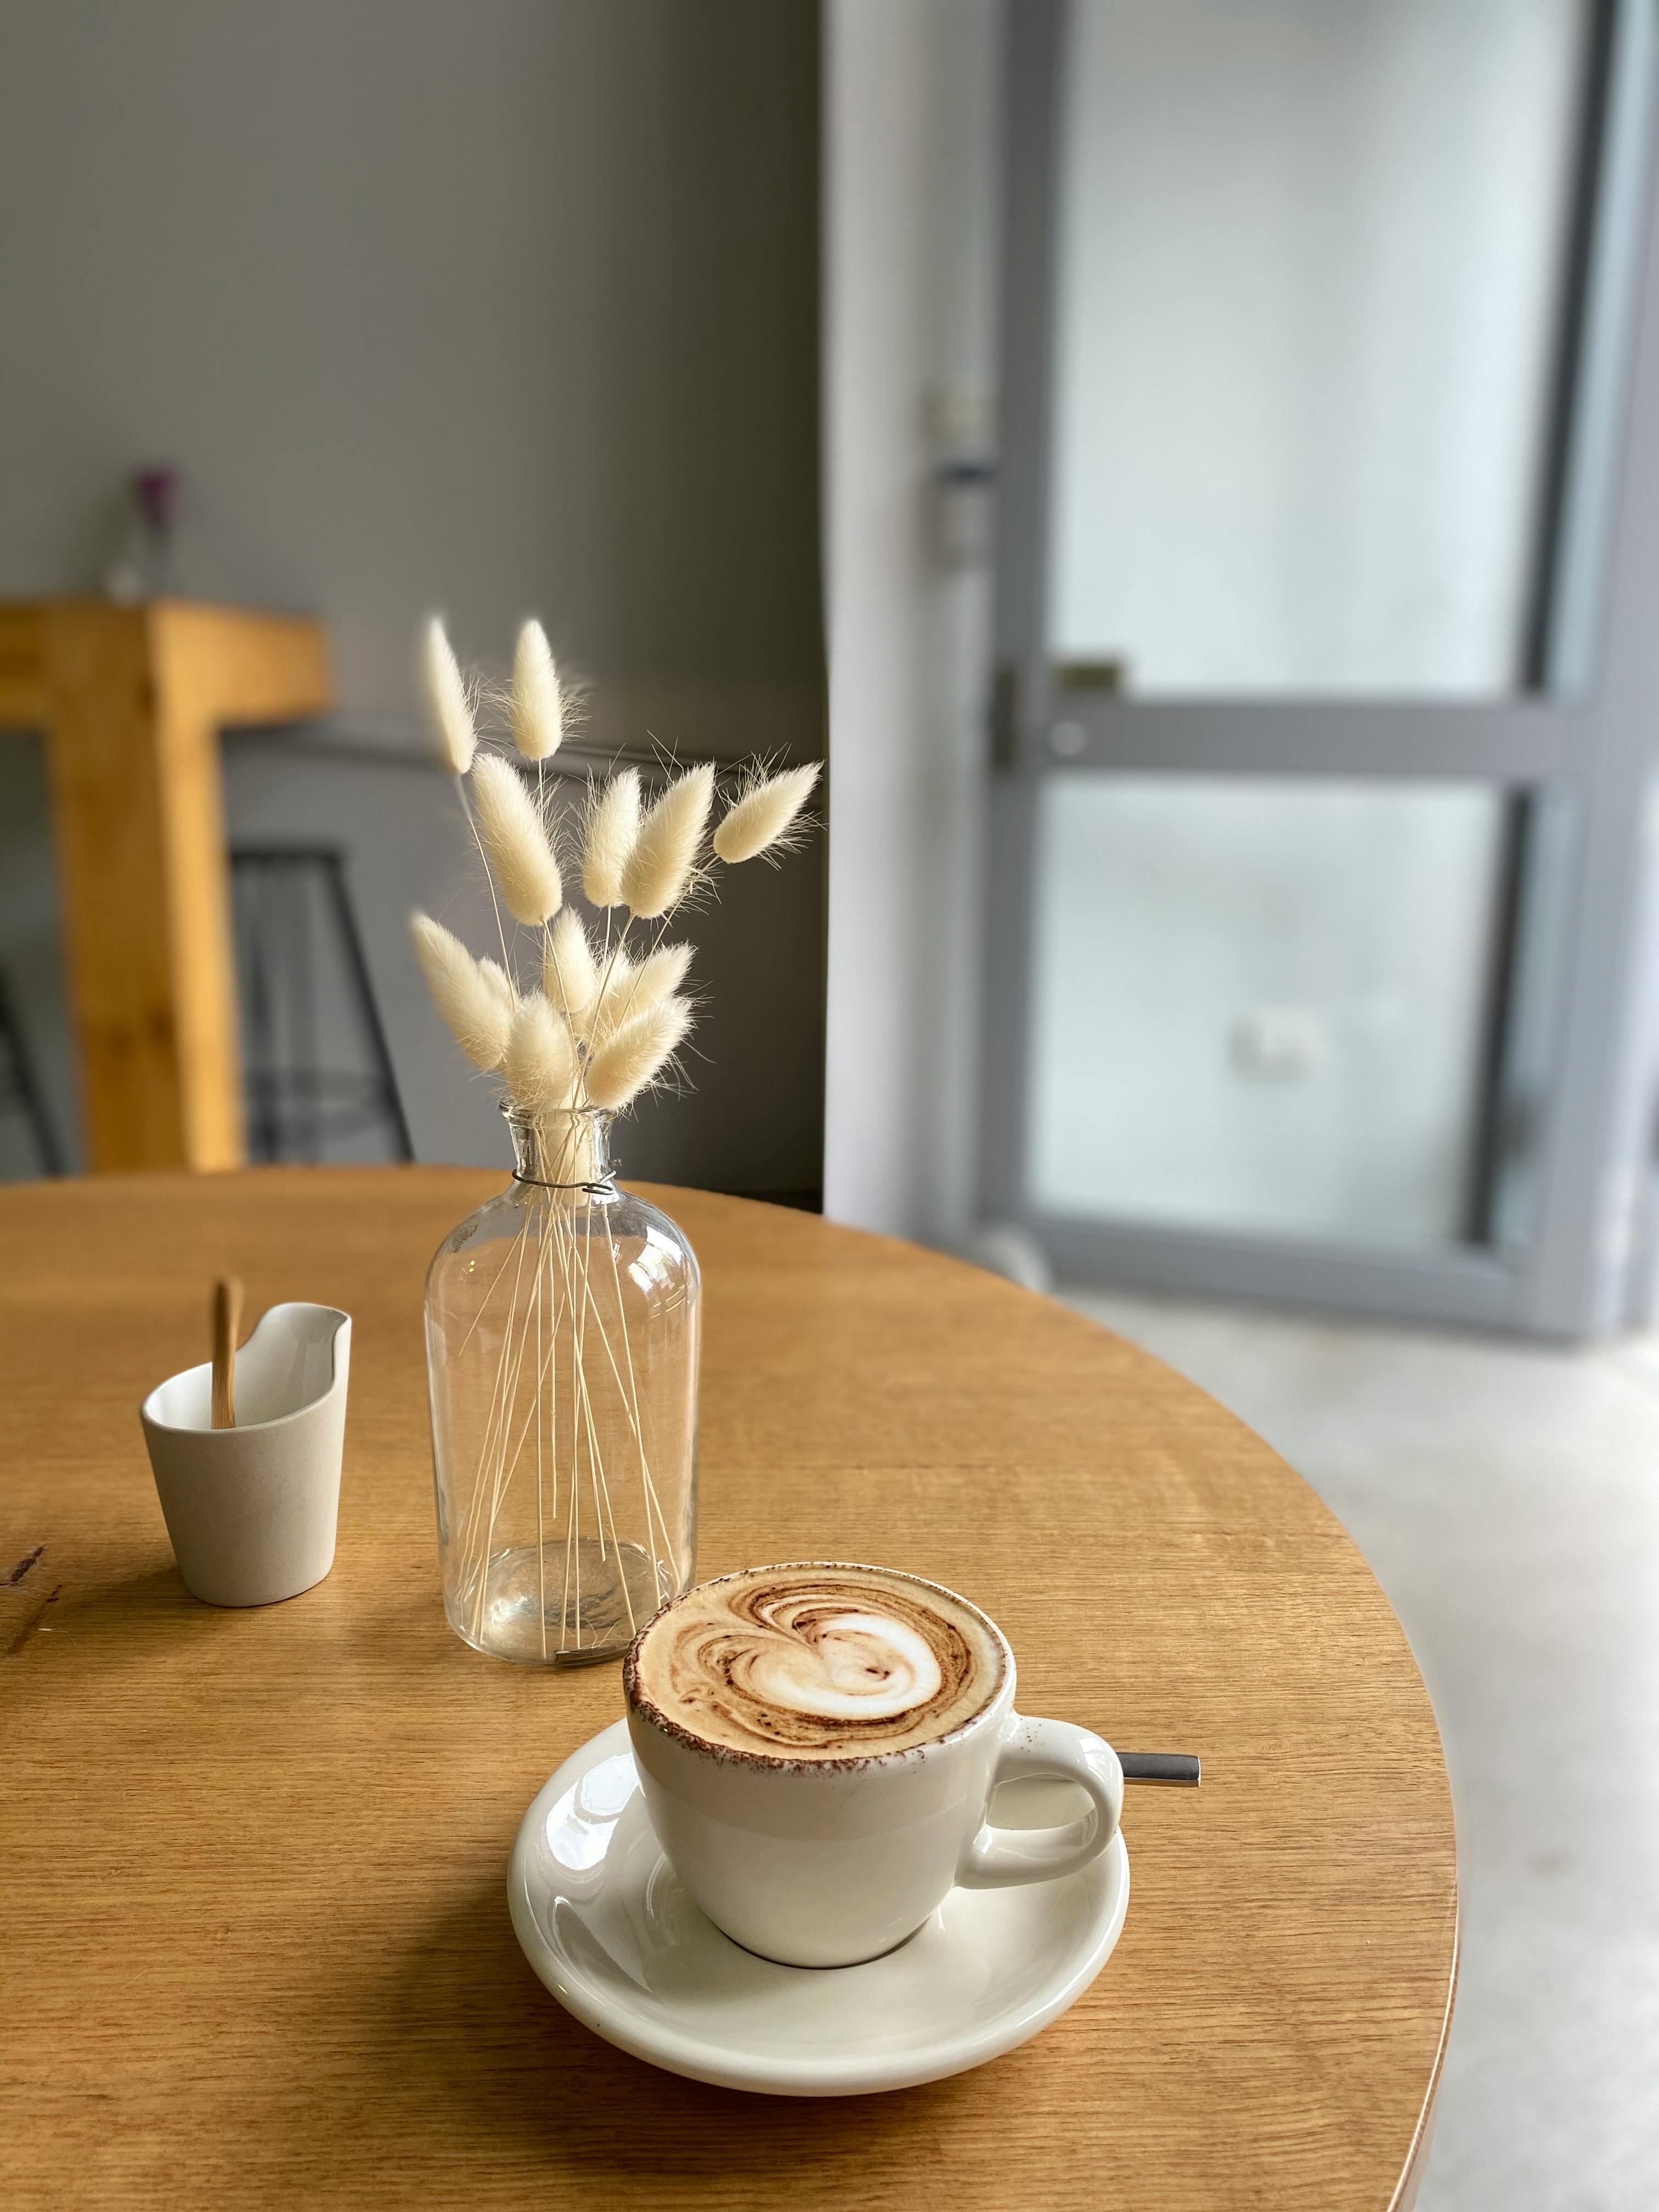 Taza de café en una cafetería | Fuente: Pexels